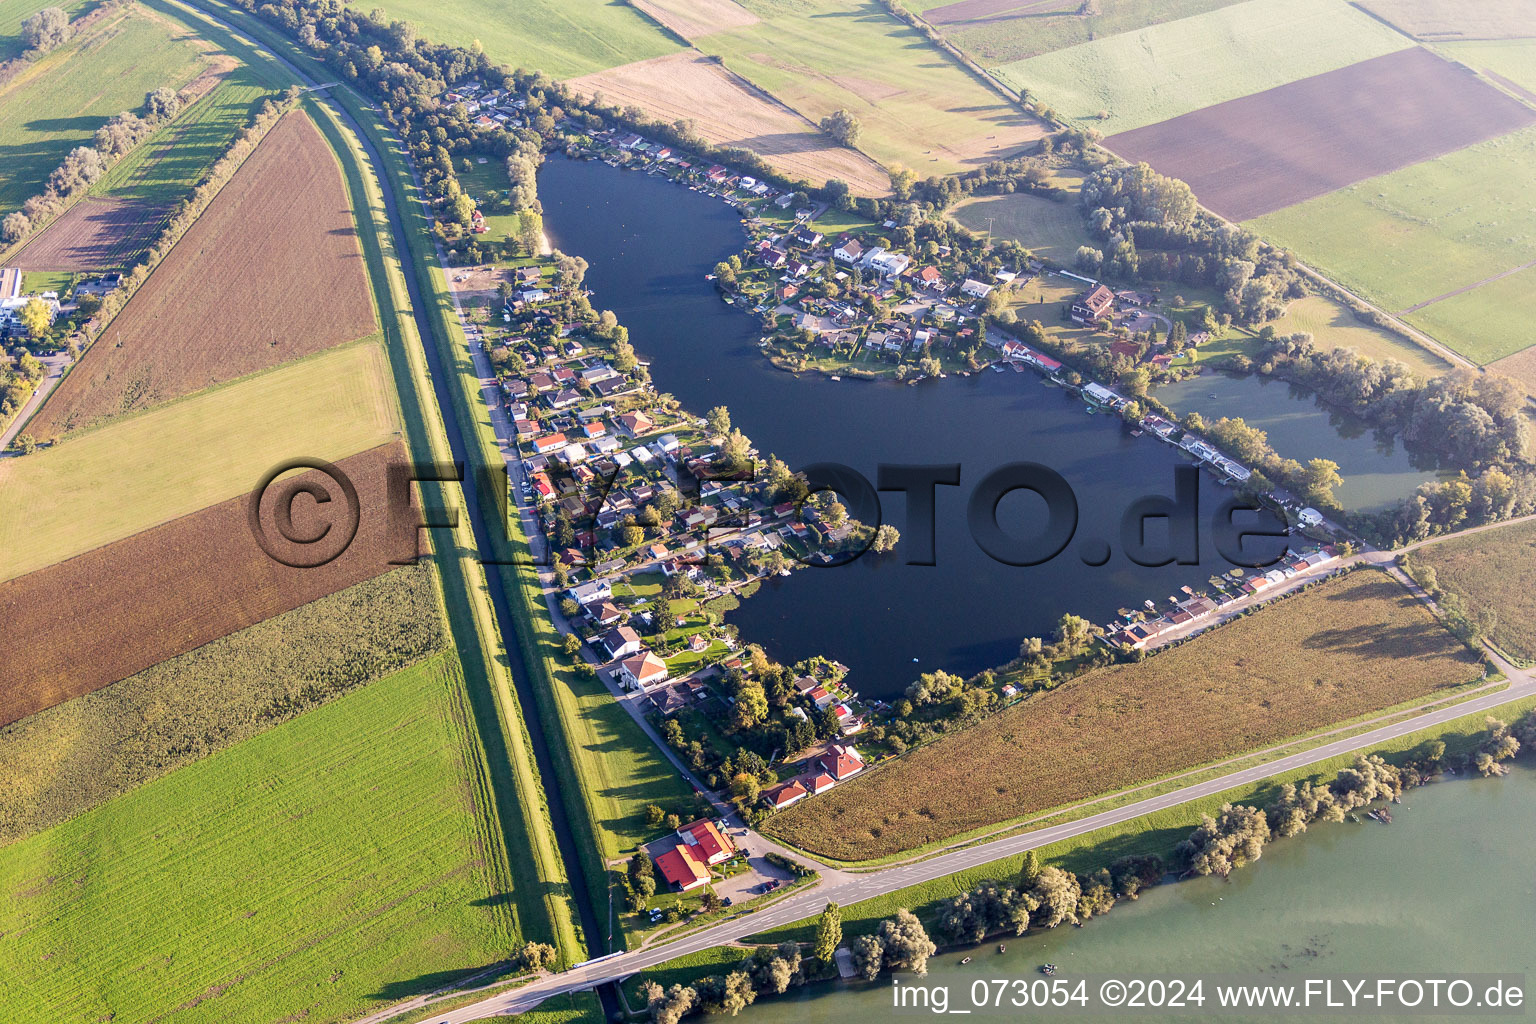 Vue aérienne de Propriétés de week-end au bord du lac de carrière Hohwiesensee à Ketsch dans le département Bade-Wurtemberg, Allemagne